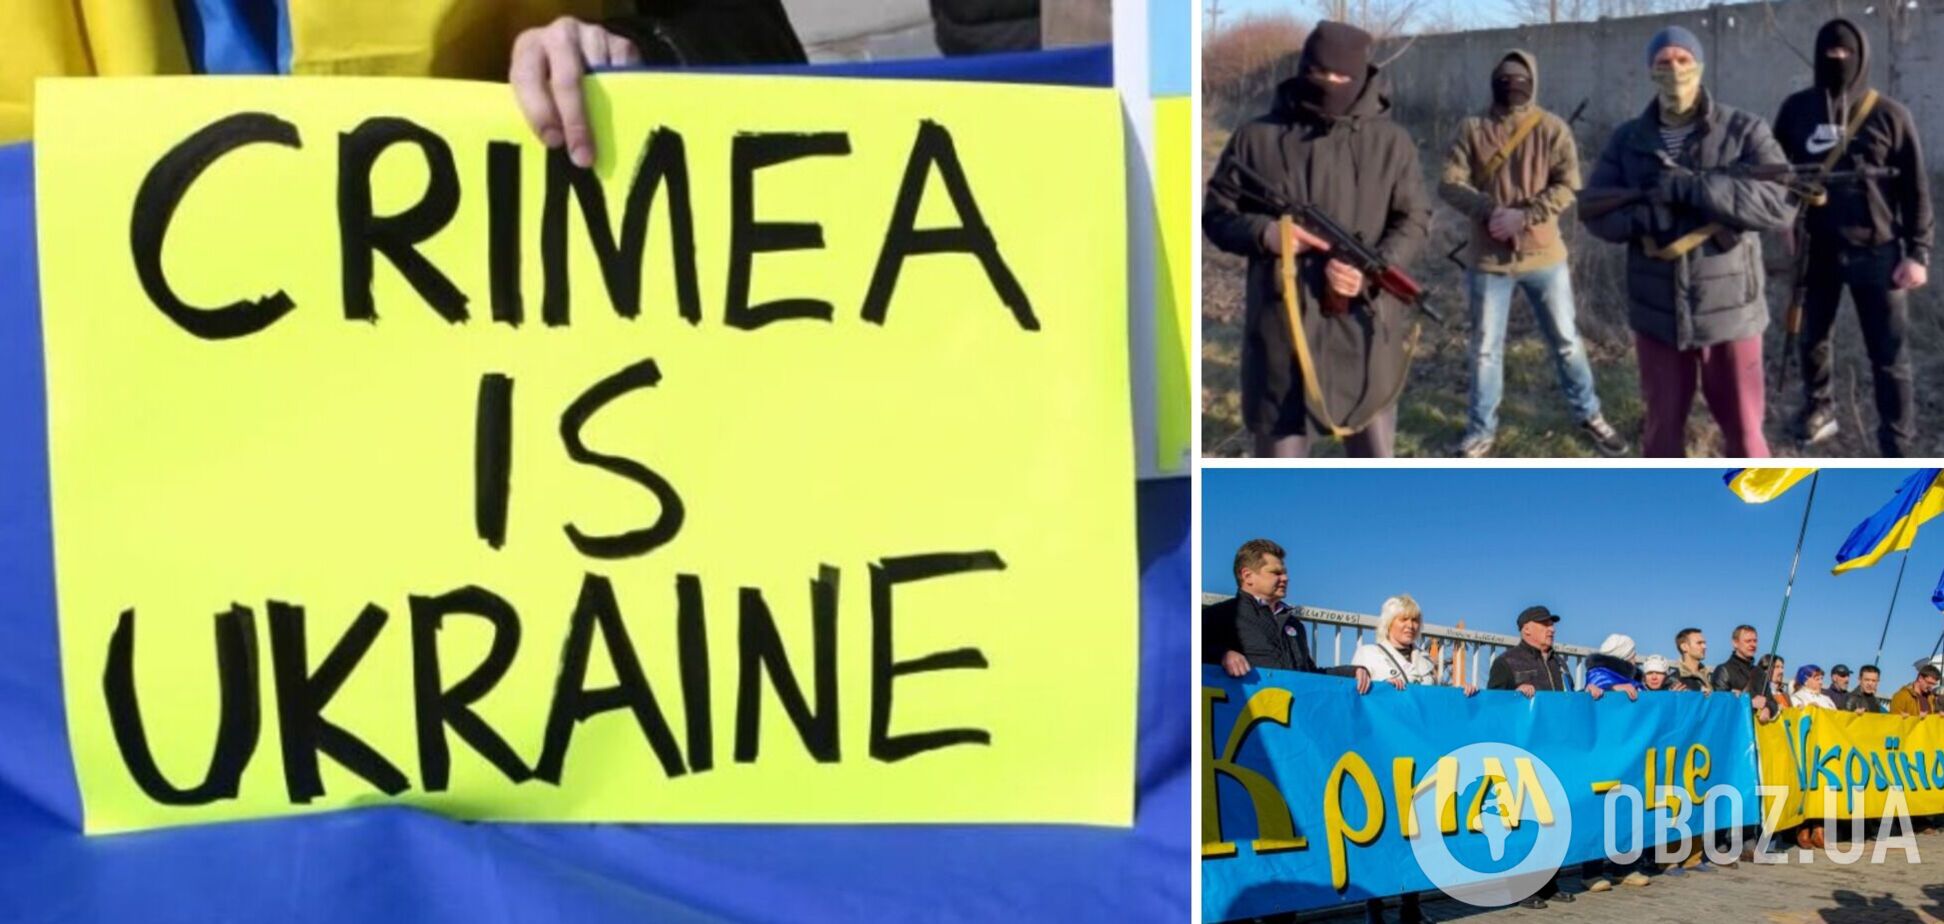 Партизаны движения 'Атеш' из Крыма сообщили о подготовке подрыва железной дороги и передали приветствие РДК и Брянщине. Видео